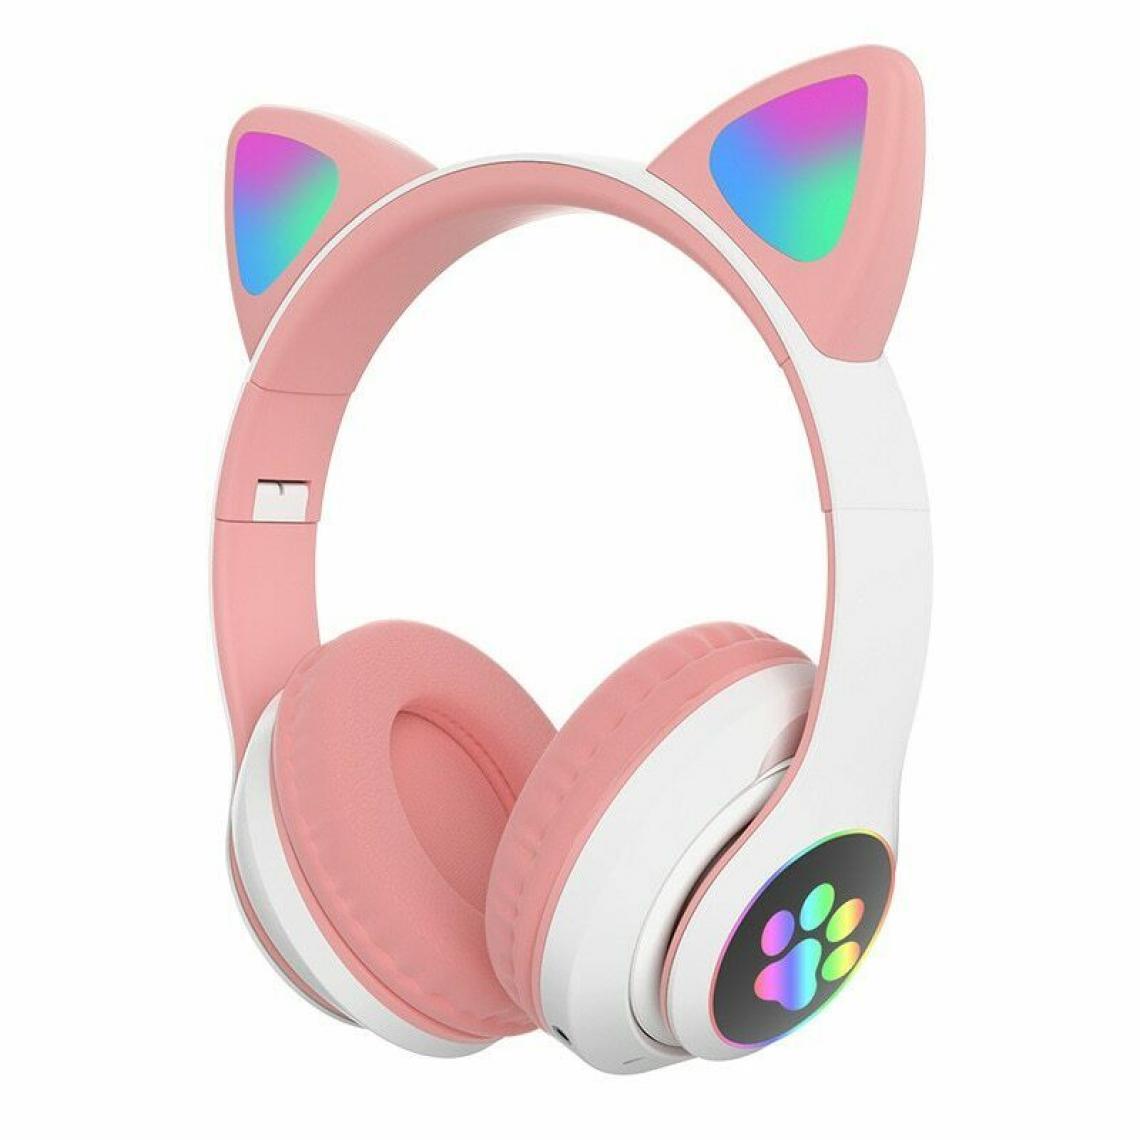 Universal - Casque pour chat mignon sans fil casque Bluetooth casque stéréo LED casque de musique téléphone portable avec microphone flash casque pour enfants Cadeaux |(Rose) - Micro-Casque